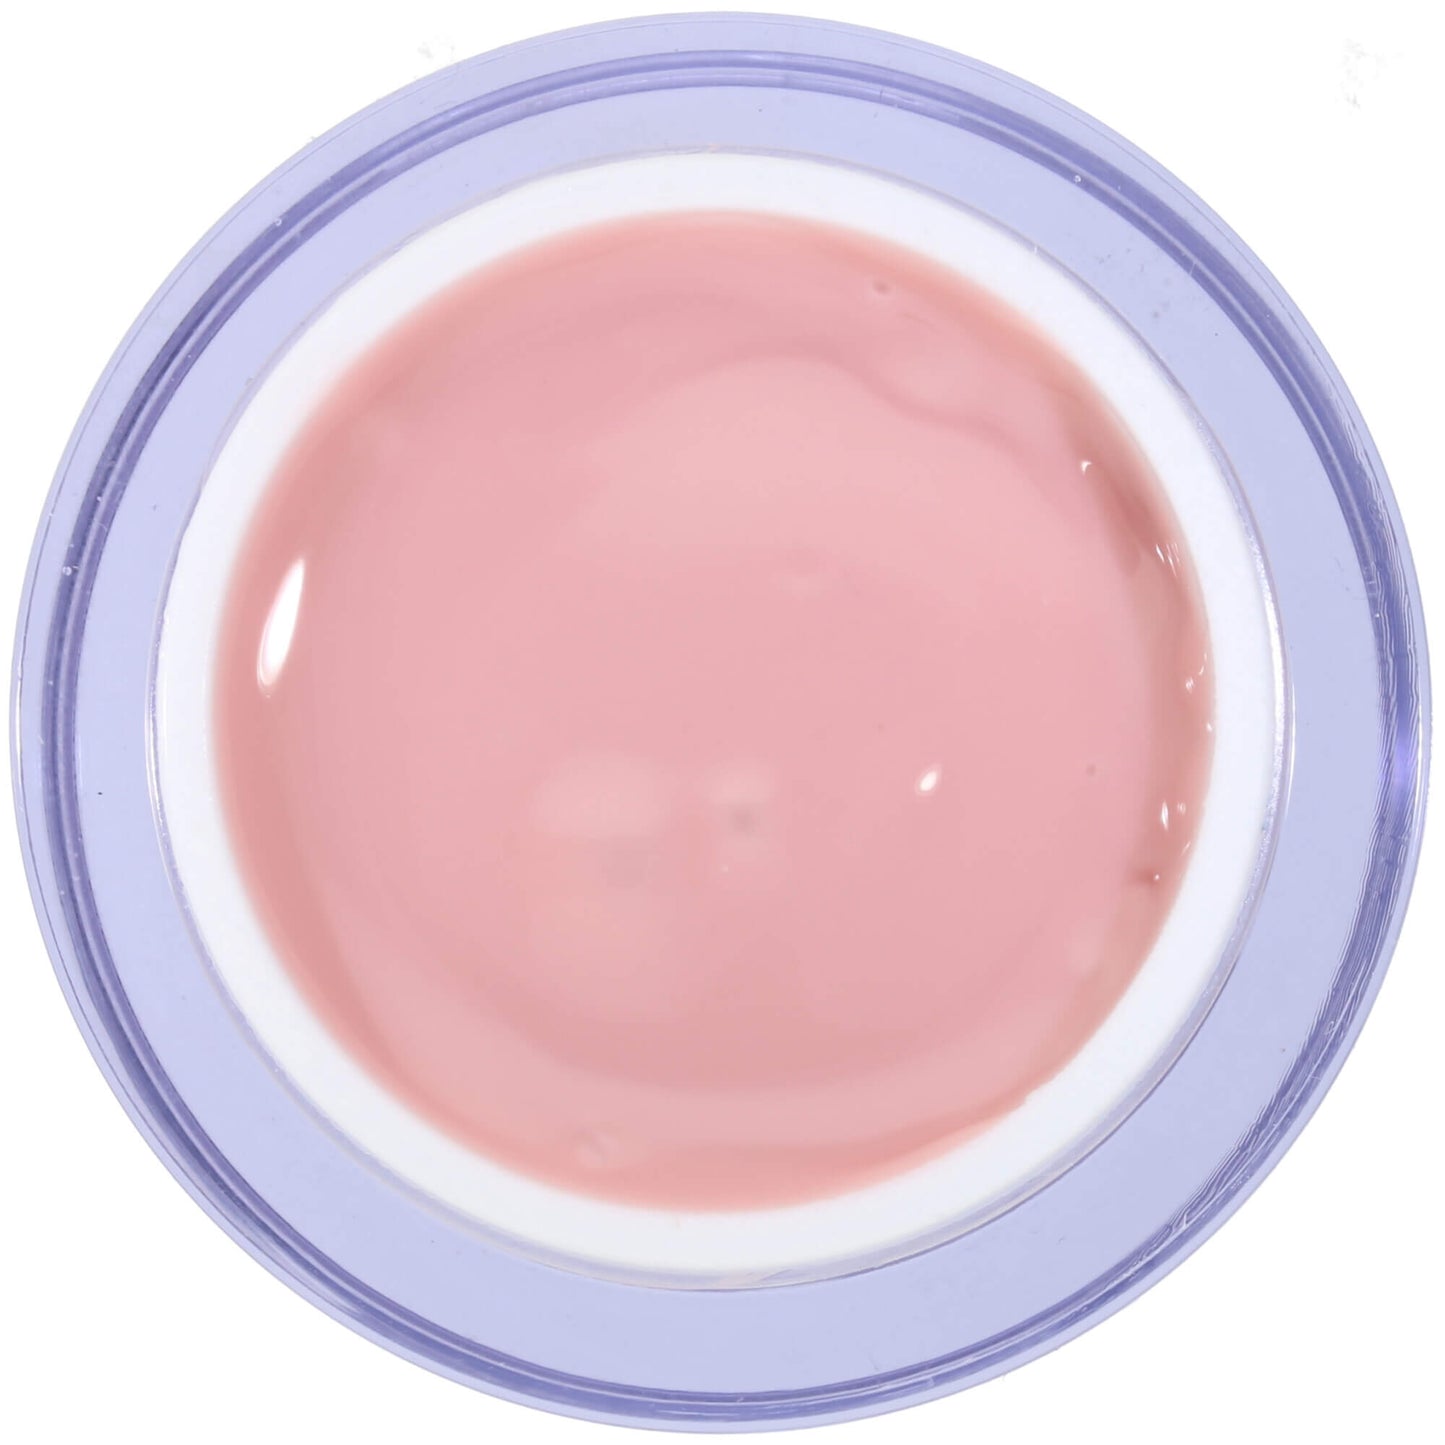 MSE stencil gel pale pink, high-viscosity / Sculpting pale pink high-viscosity 5ml